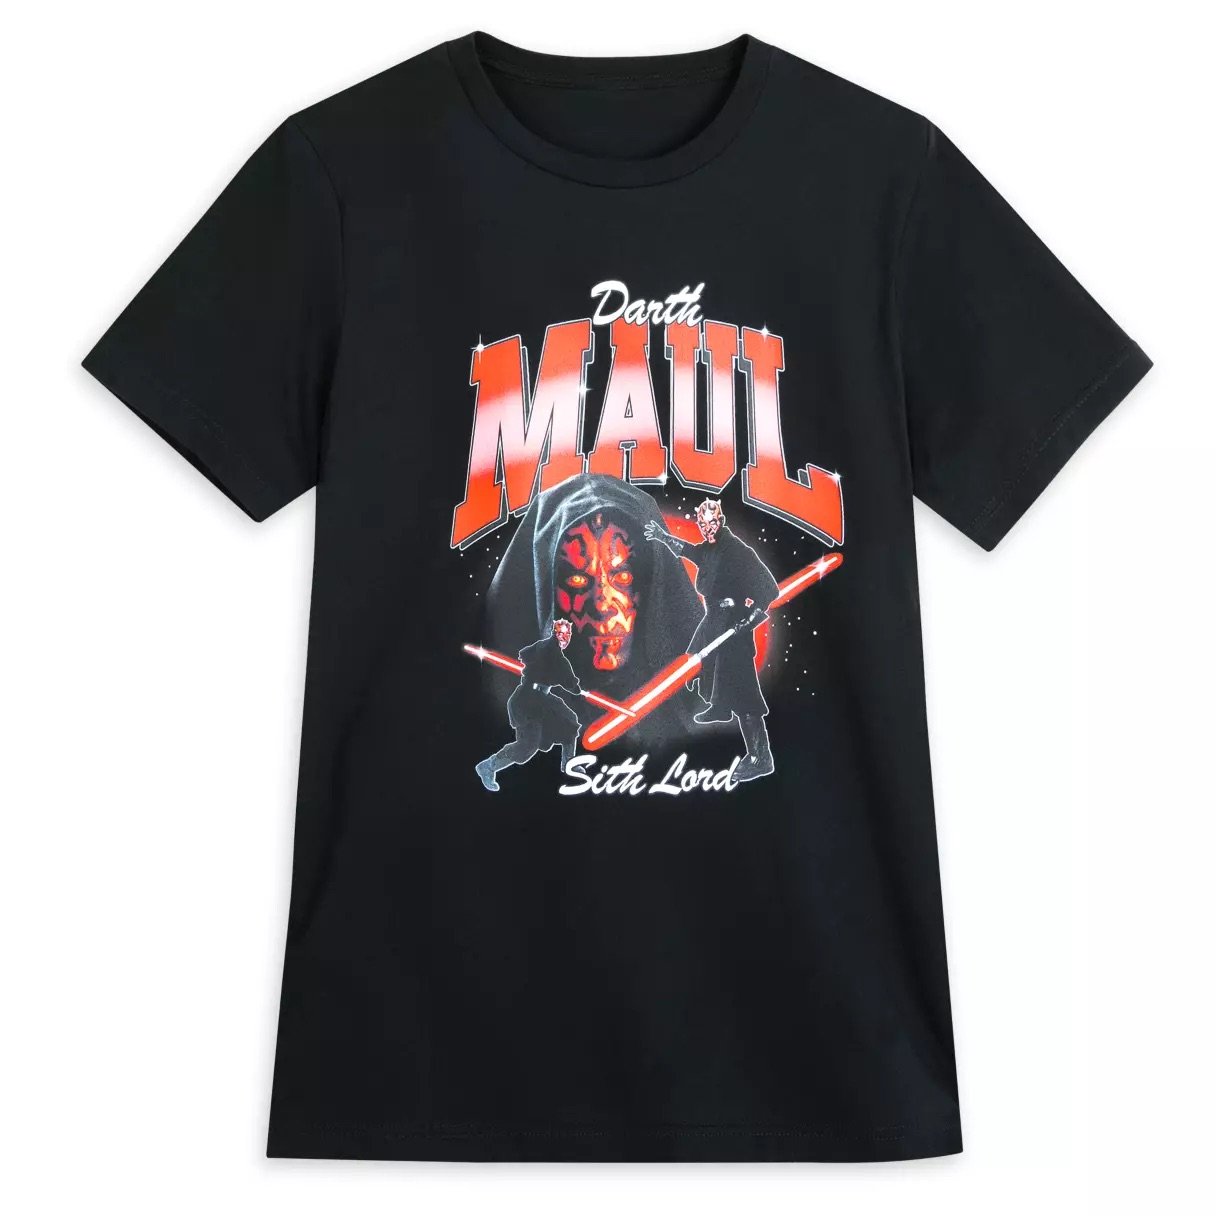 Darth Maul T-Shirt